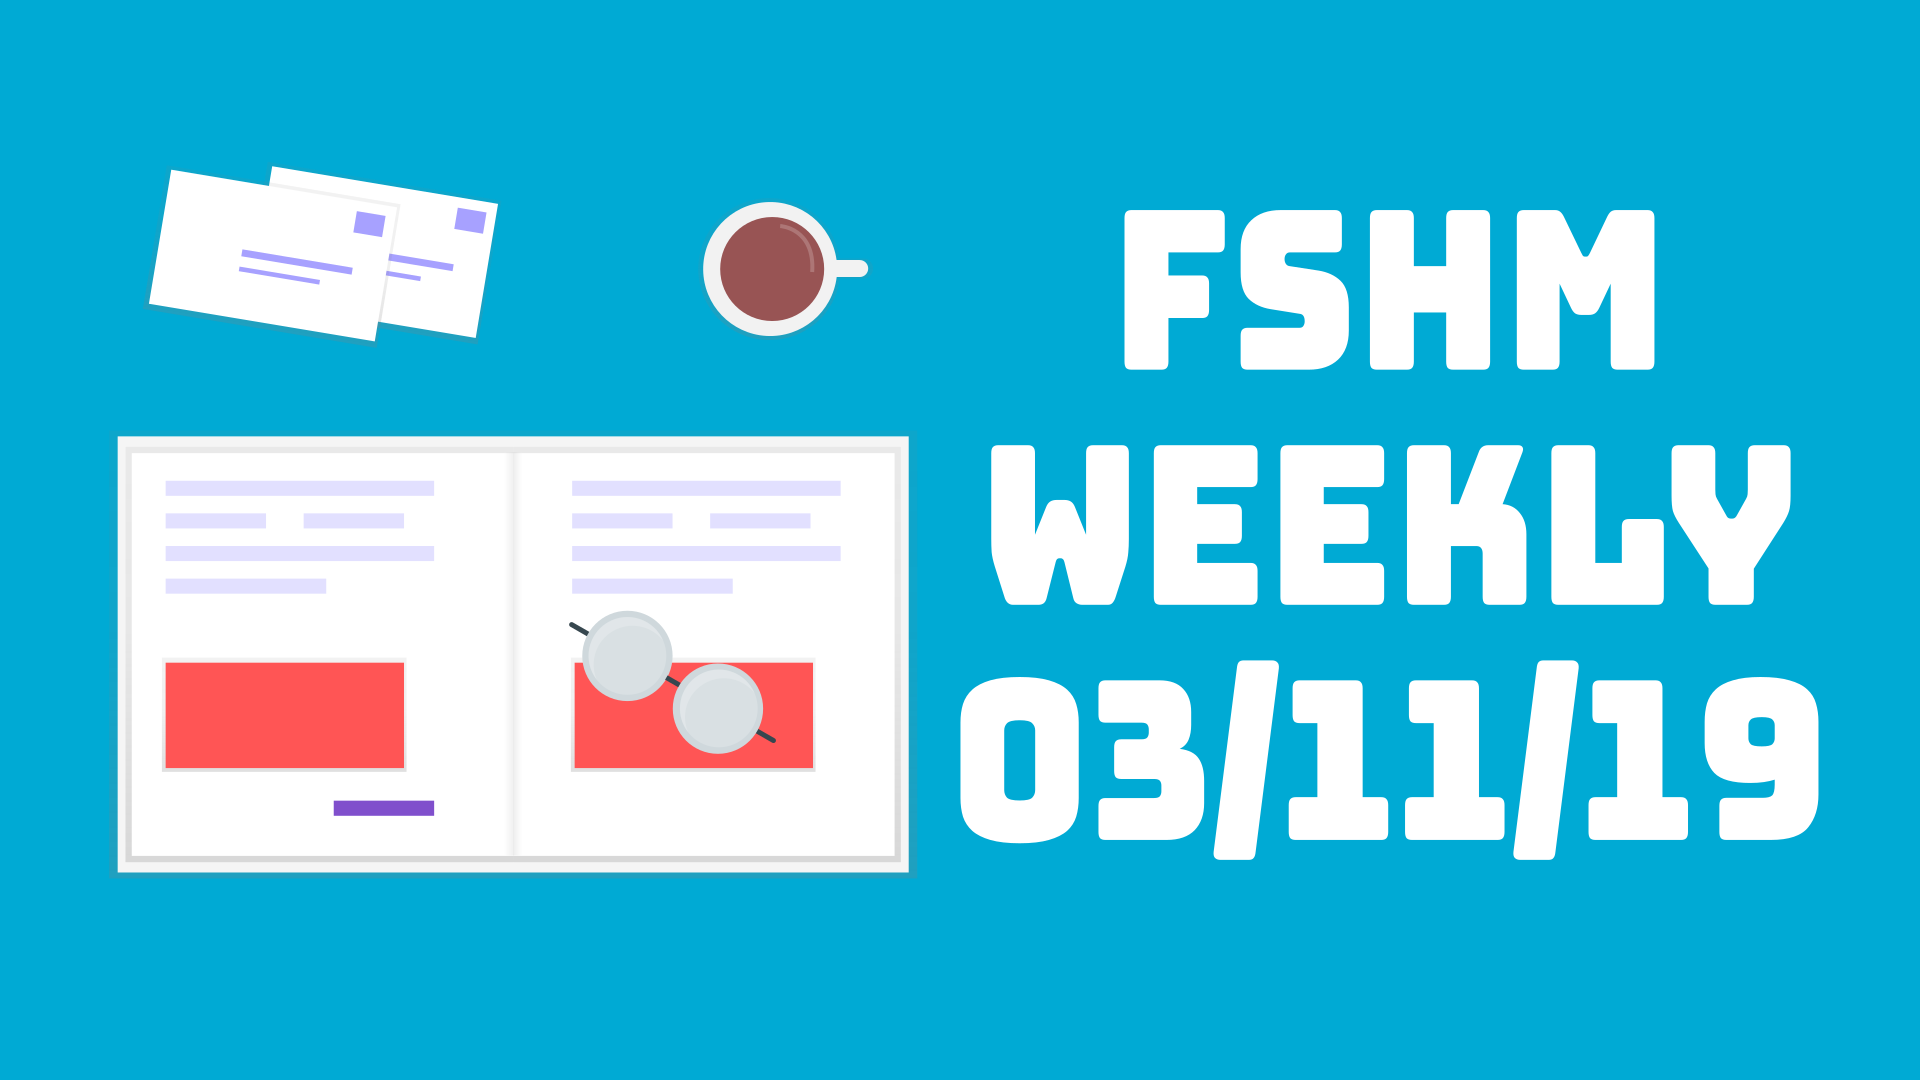 FSHM Weekly - 03/11/19